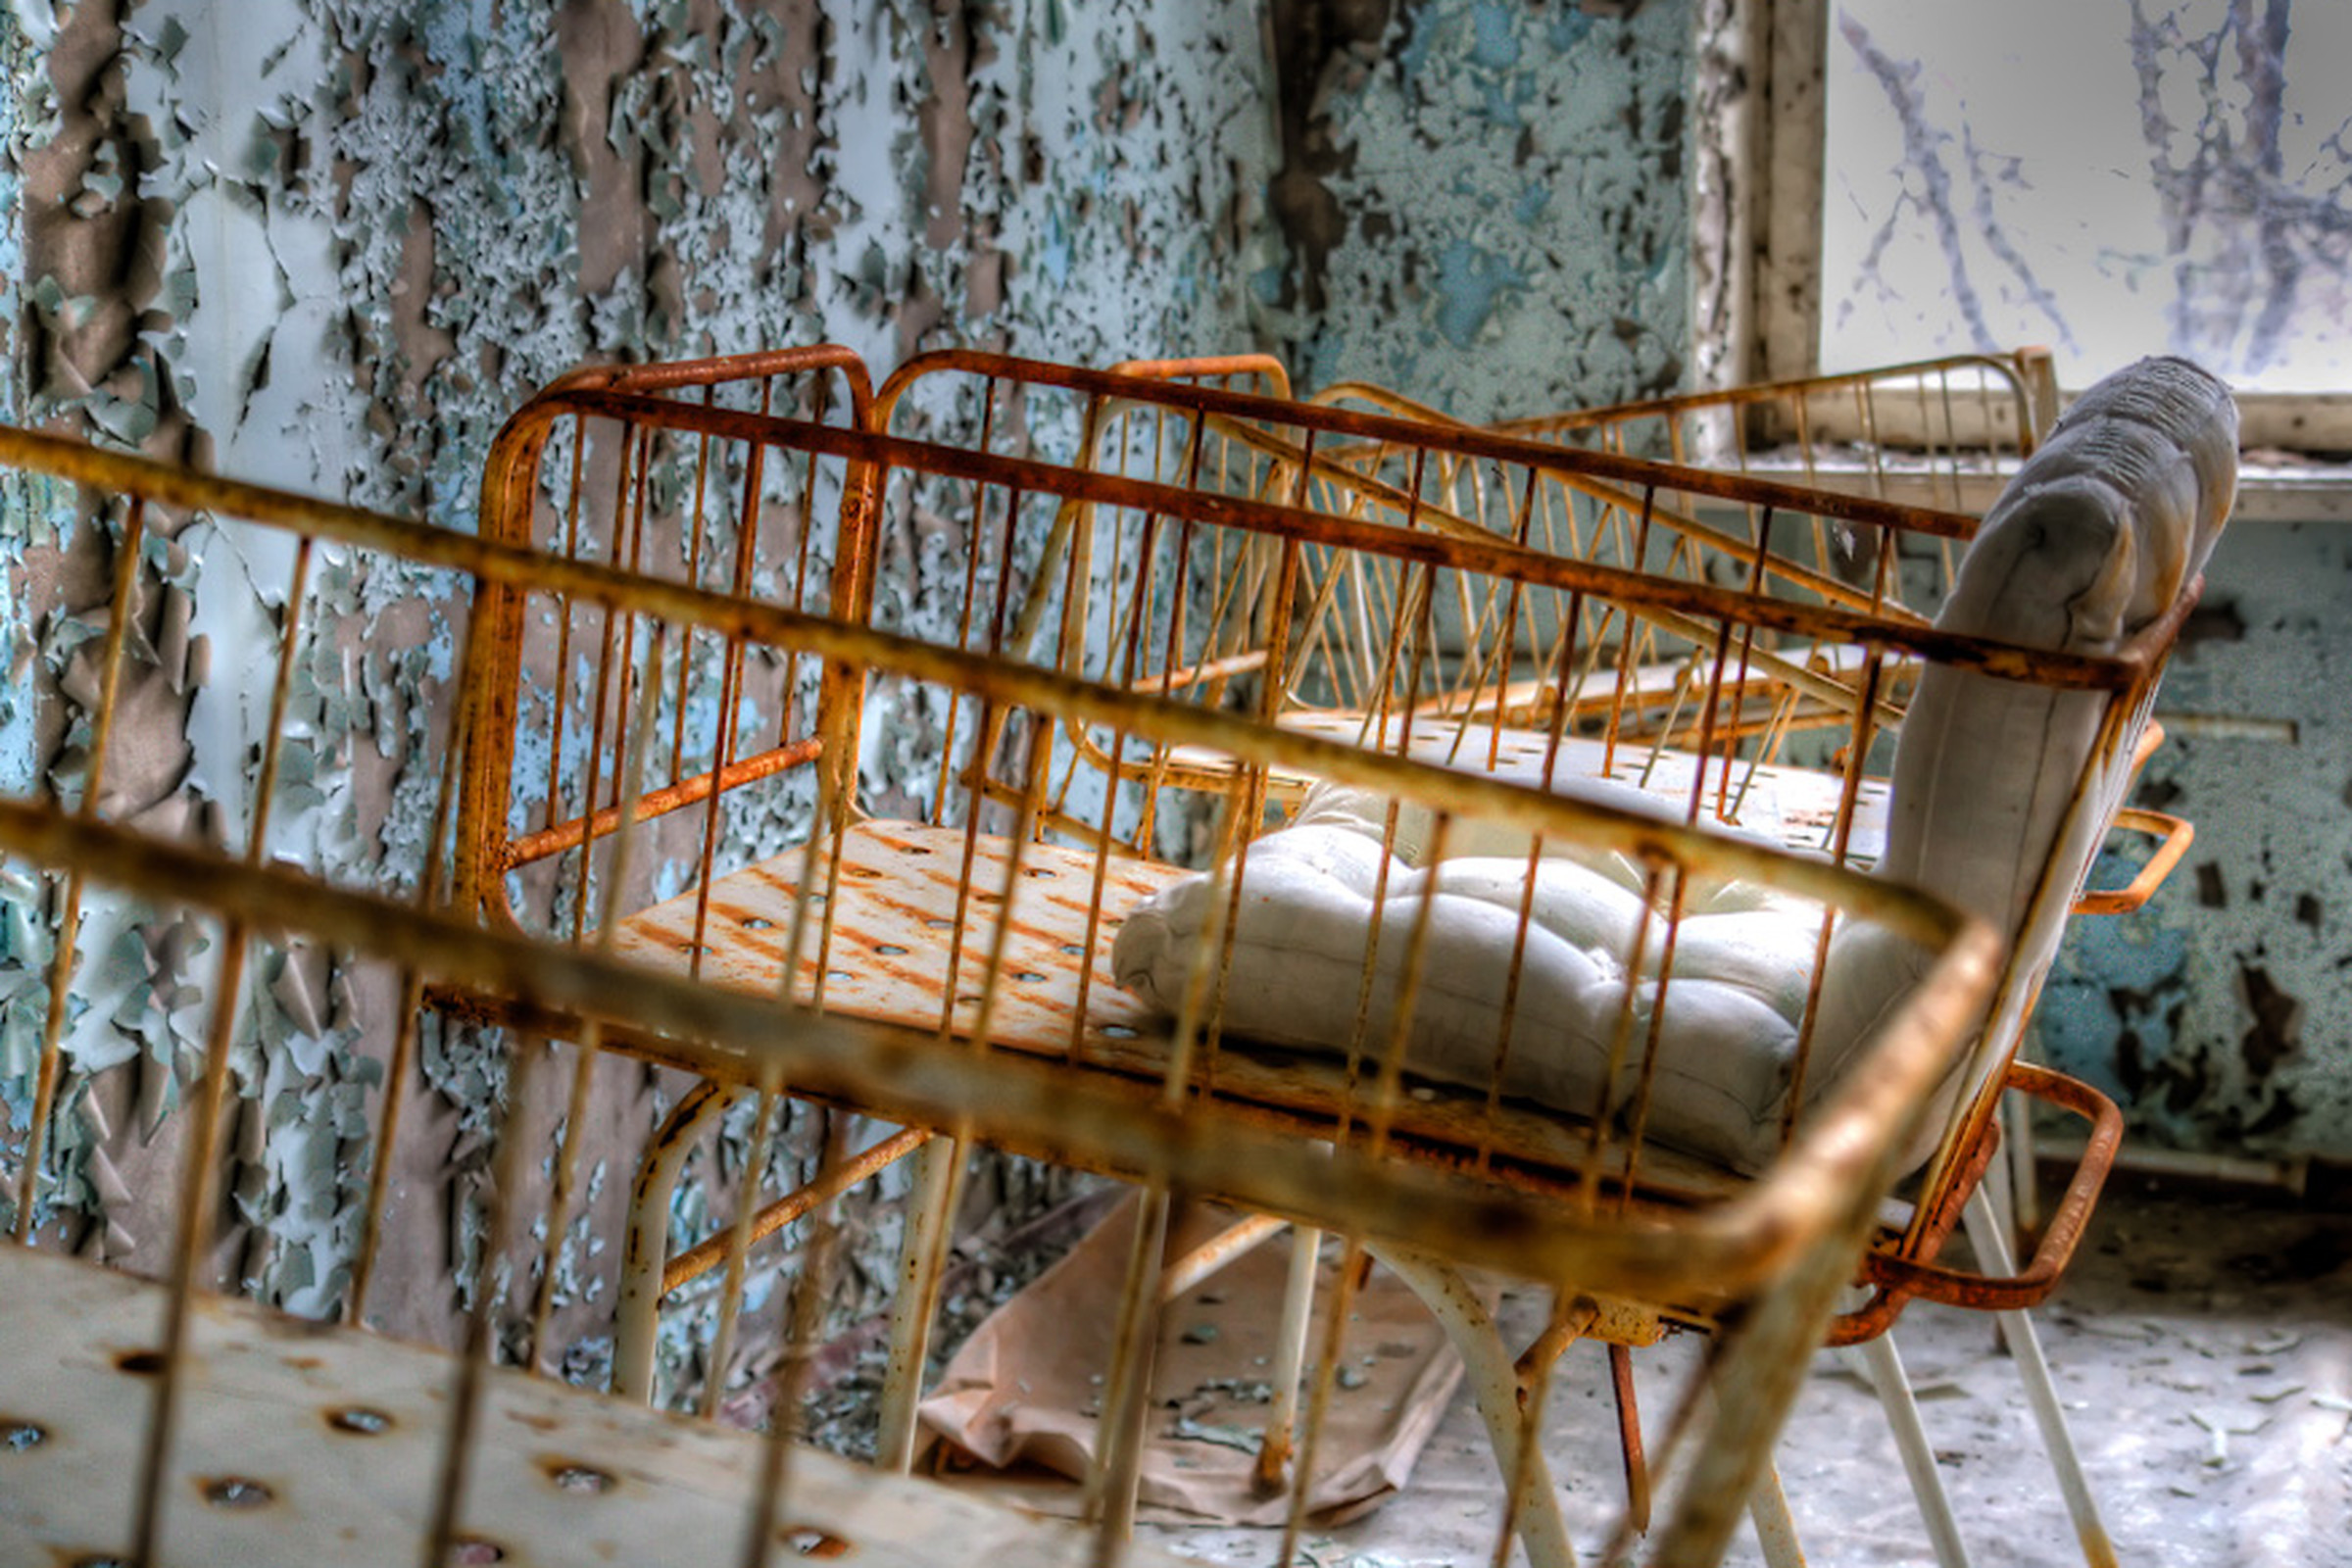 Chernobyl Pripyat hospital timm suess